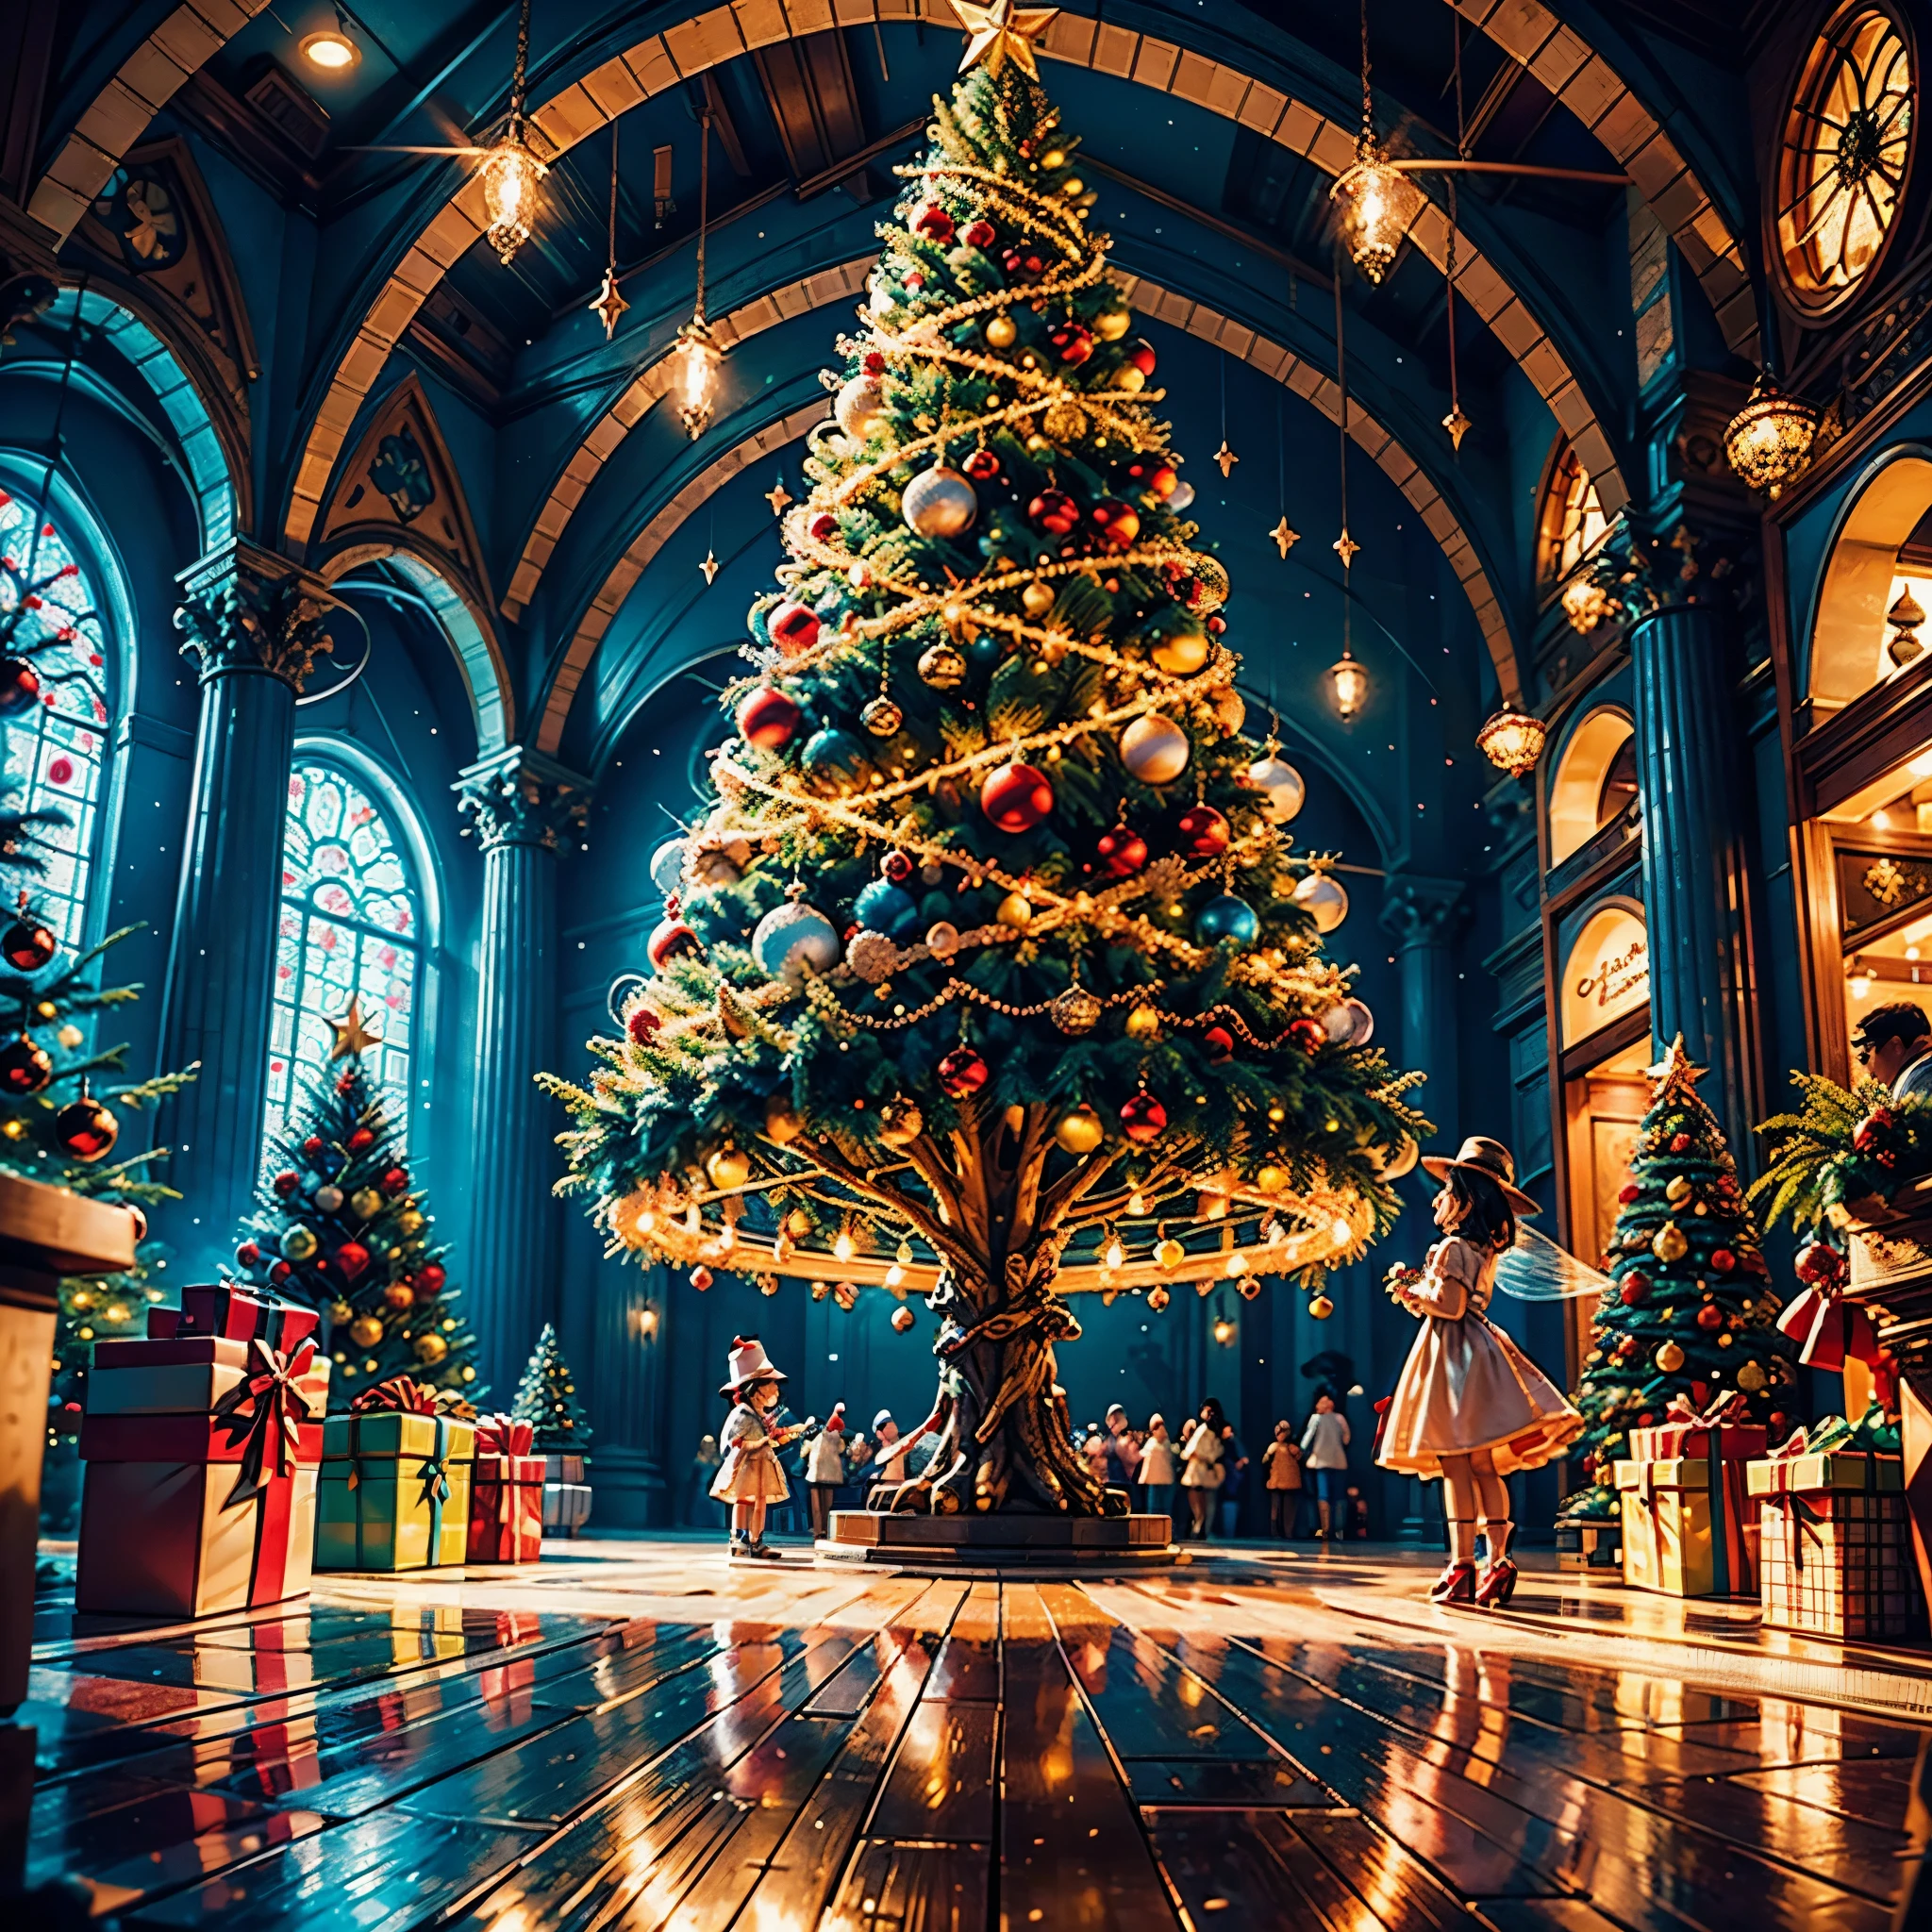 (((矢量插画风格)))，鲜艳的色彩, 神奇的氛围, 异想天开, 闪闪发光的, 奇幻的圣诞世界,色彩鲜艳, 色彩鲜艳, 神奇的氛围, 异想天开, 闪闪发光的，奇幻的圣诞世界，圣诞商场内，巨大的圣诞树上挂满了彩灯、绒球、圣诞袜，圣诞吊坠，树下摆放着成堆的礼物。一对年轻夫妇正在欣赏商场里的圣诞装饰，周围都是穿着圣诞老人服装的表演者和圣诞老人雕像。犹如童话世界的圣诞商场，充满魔力， (吉卜力风格的色彩, 扔, 第一人称视角, 准确的, 解剖学上正确, 超级细节, 高细节, 高质量, 屡获殊荣, 最好的质量) 🎈🍦🍹❤🔆🕡(😘👩🎀👗⚜👒🥿👡🩲💅)🎪🎢🎡🎠 极端主义者_high-def 极端主义者_Photo-realistic optimal 极端主义者_high-quality opengl-shaders 极端主义者_high-details 准确的 reflex 极端主义者_高分辨率完美体积闪电改进 Octane_渲染 UHD XT3 DSLR HDR 3dcg 阴影模拟欣喜若狂对称旁观者日落电影_阳光虚幻引擎5超级杰作深度路径等距矩形_360 多种多样等等. --s 1000 --c 20 --q 20 --混乱 100